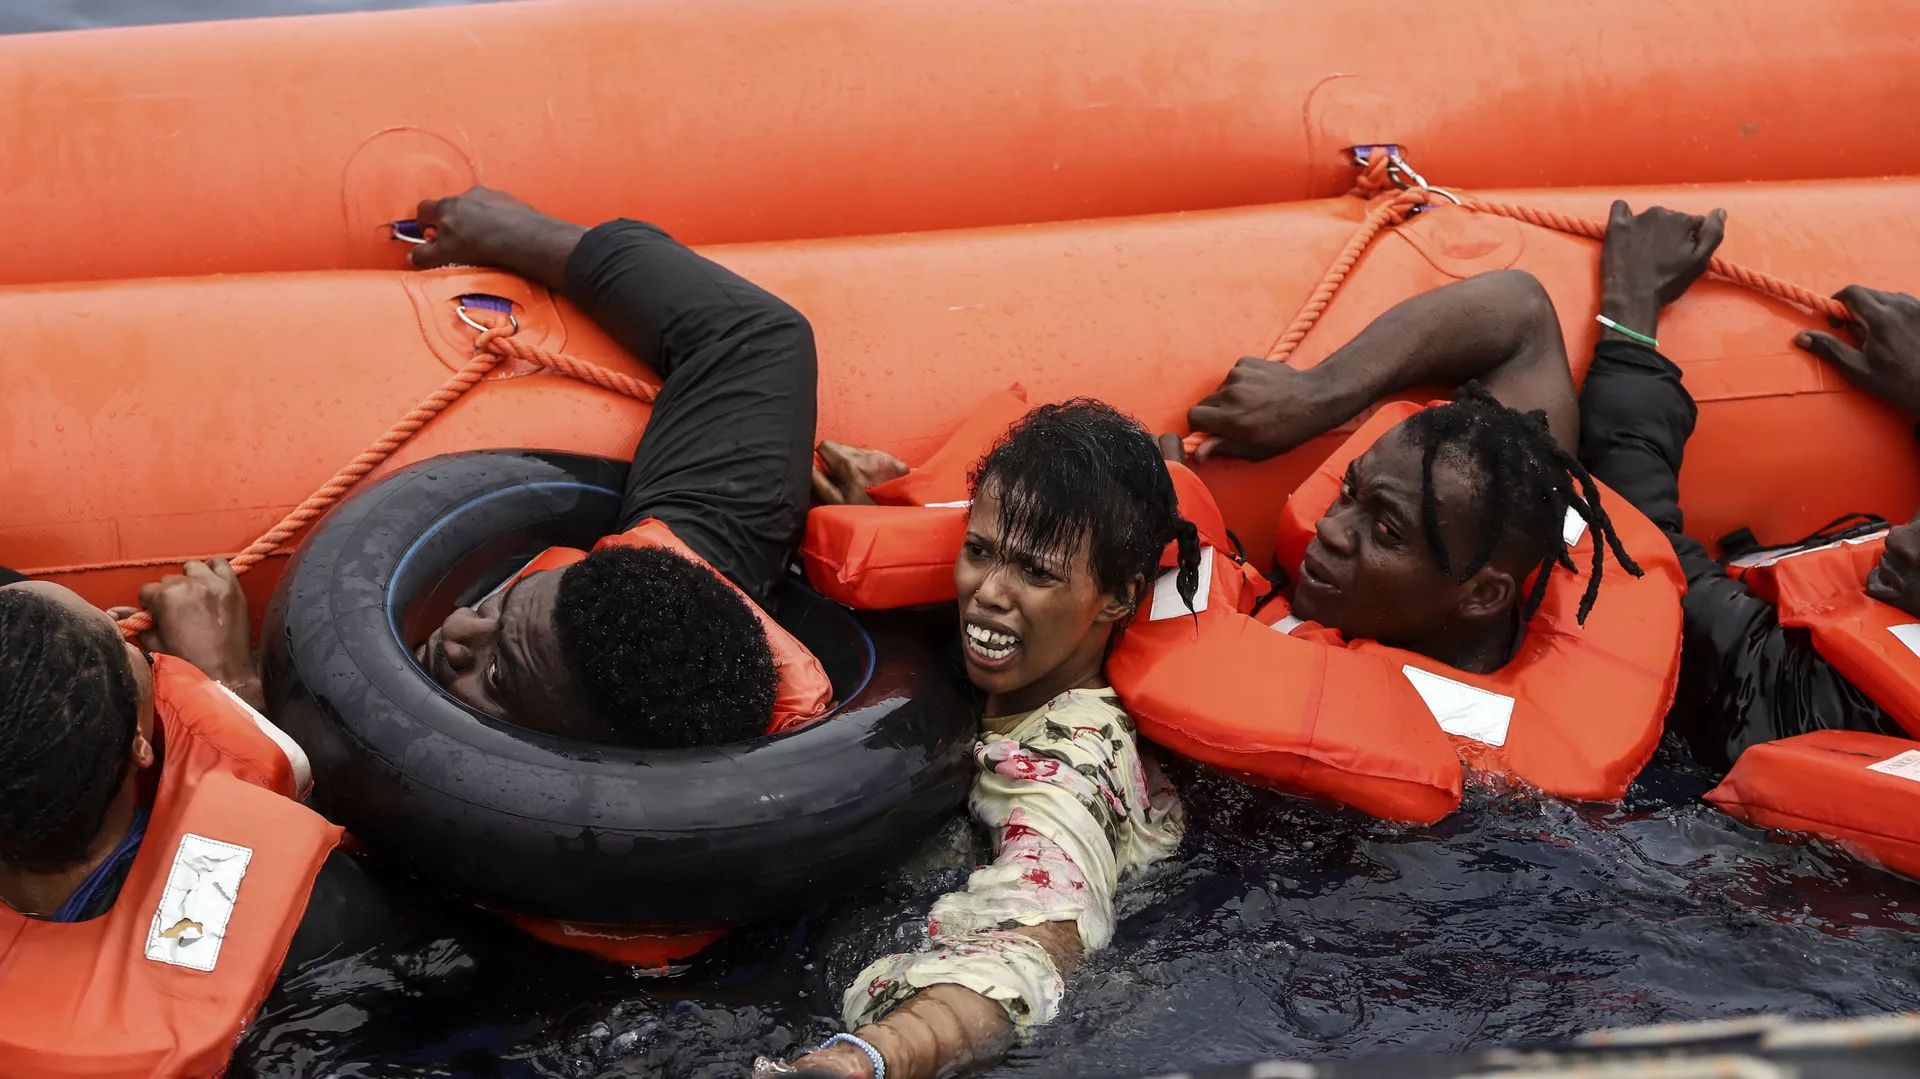 قارب المهاجرين قبل غرقه قبالة السواحل اليونانية.webp